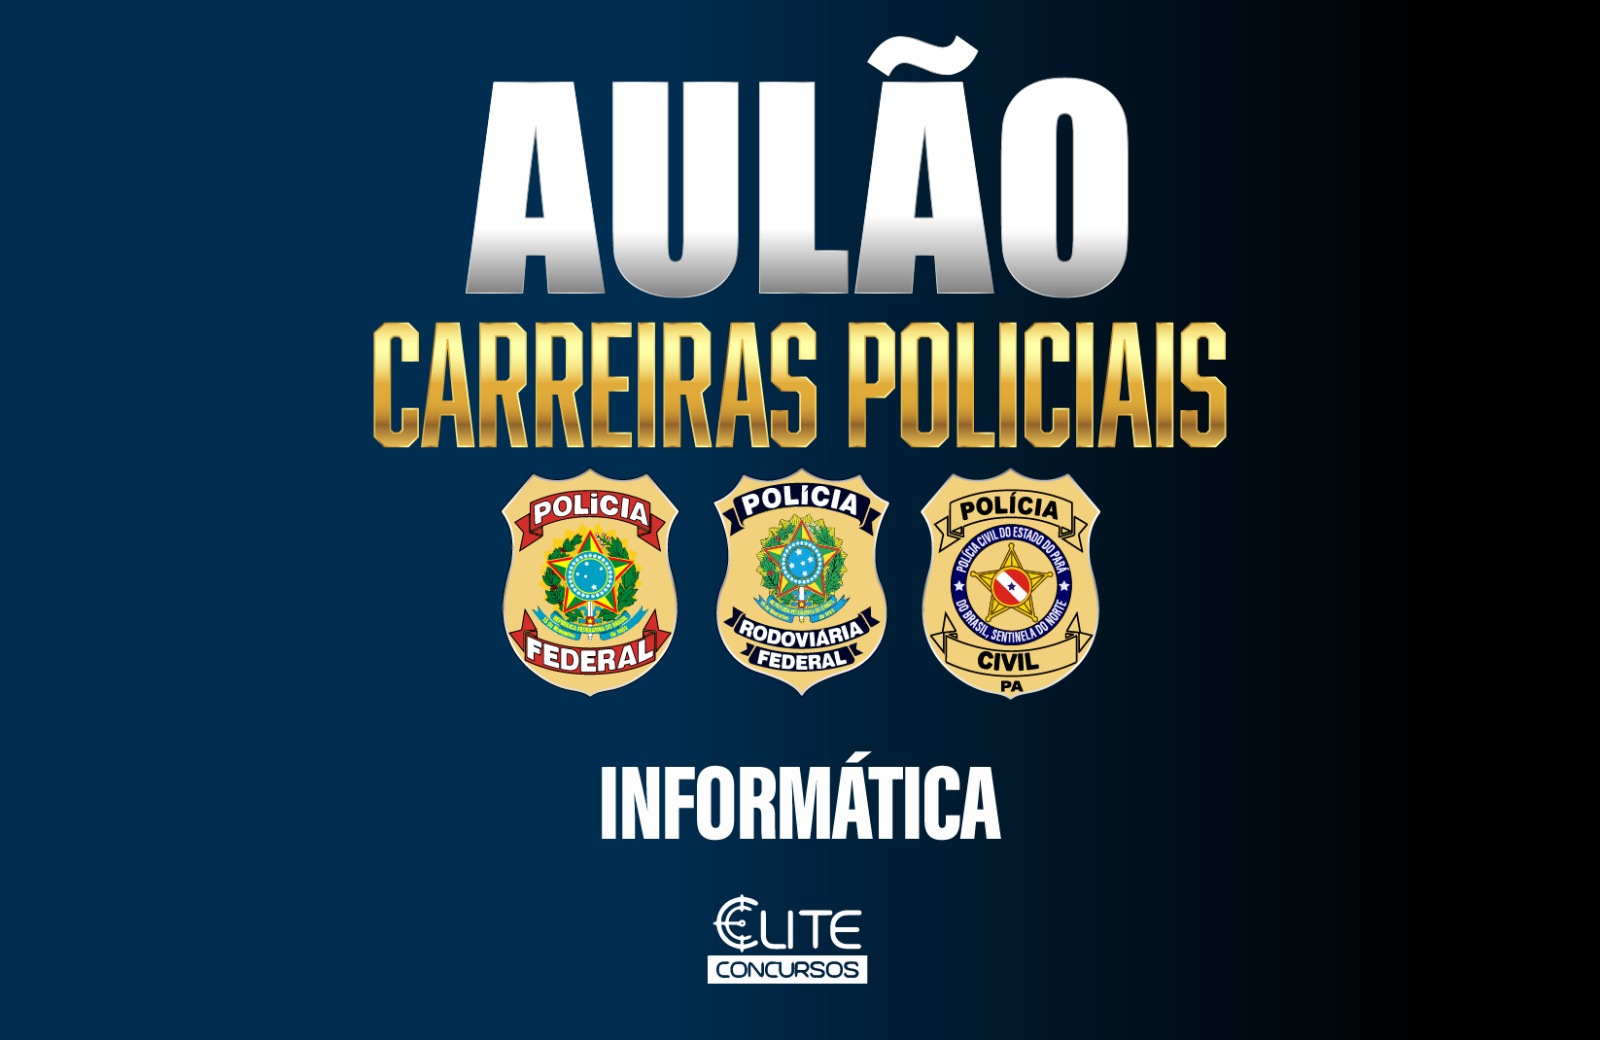 AULO - CARREIRAS POLICIAIS - INFORMTICA 